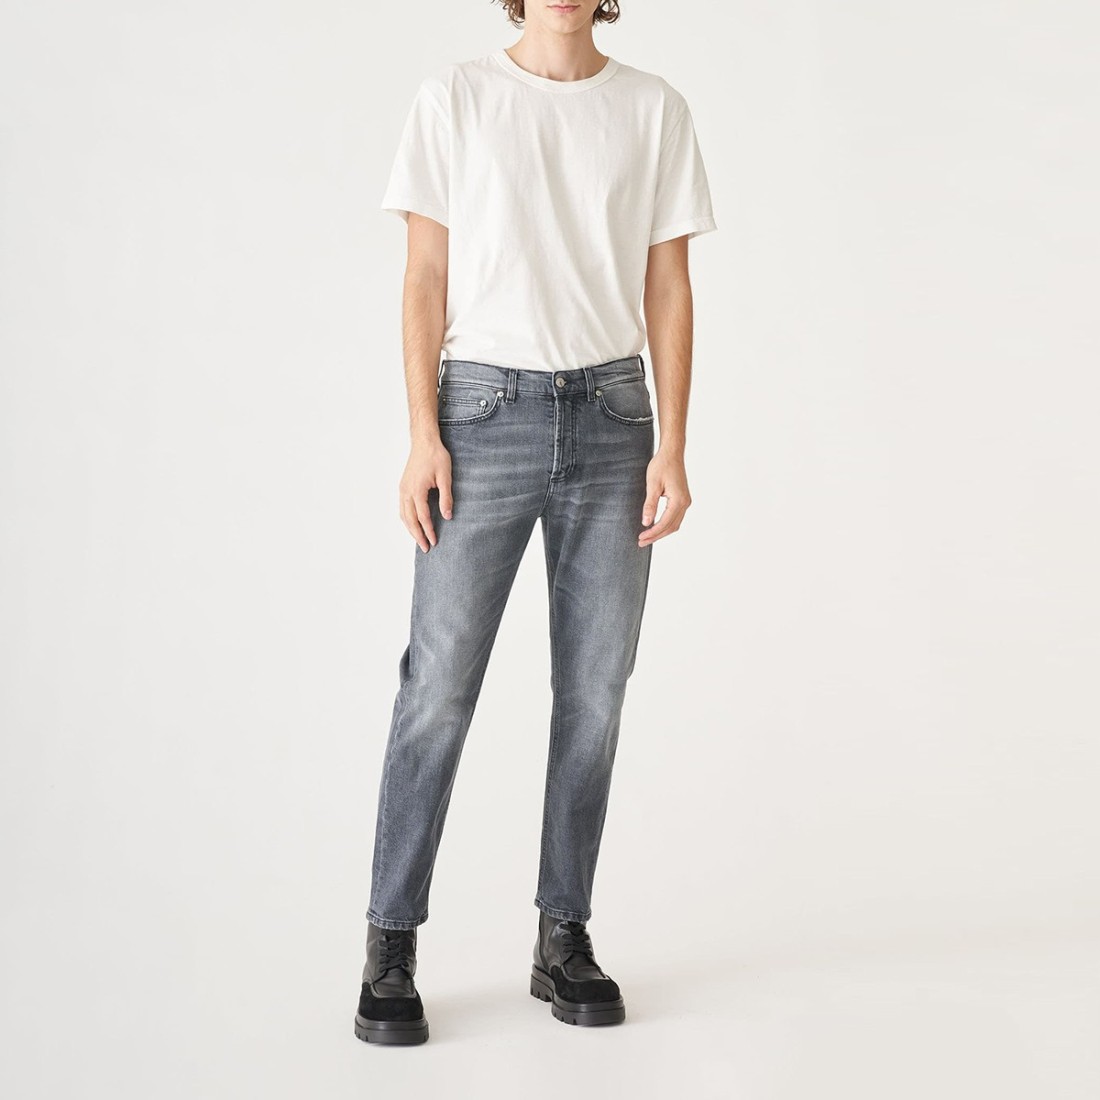 Image of GRIFONI - Jeans in denim con logo - Colore: Nero,T